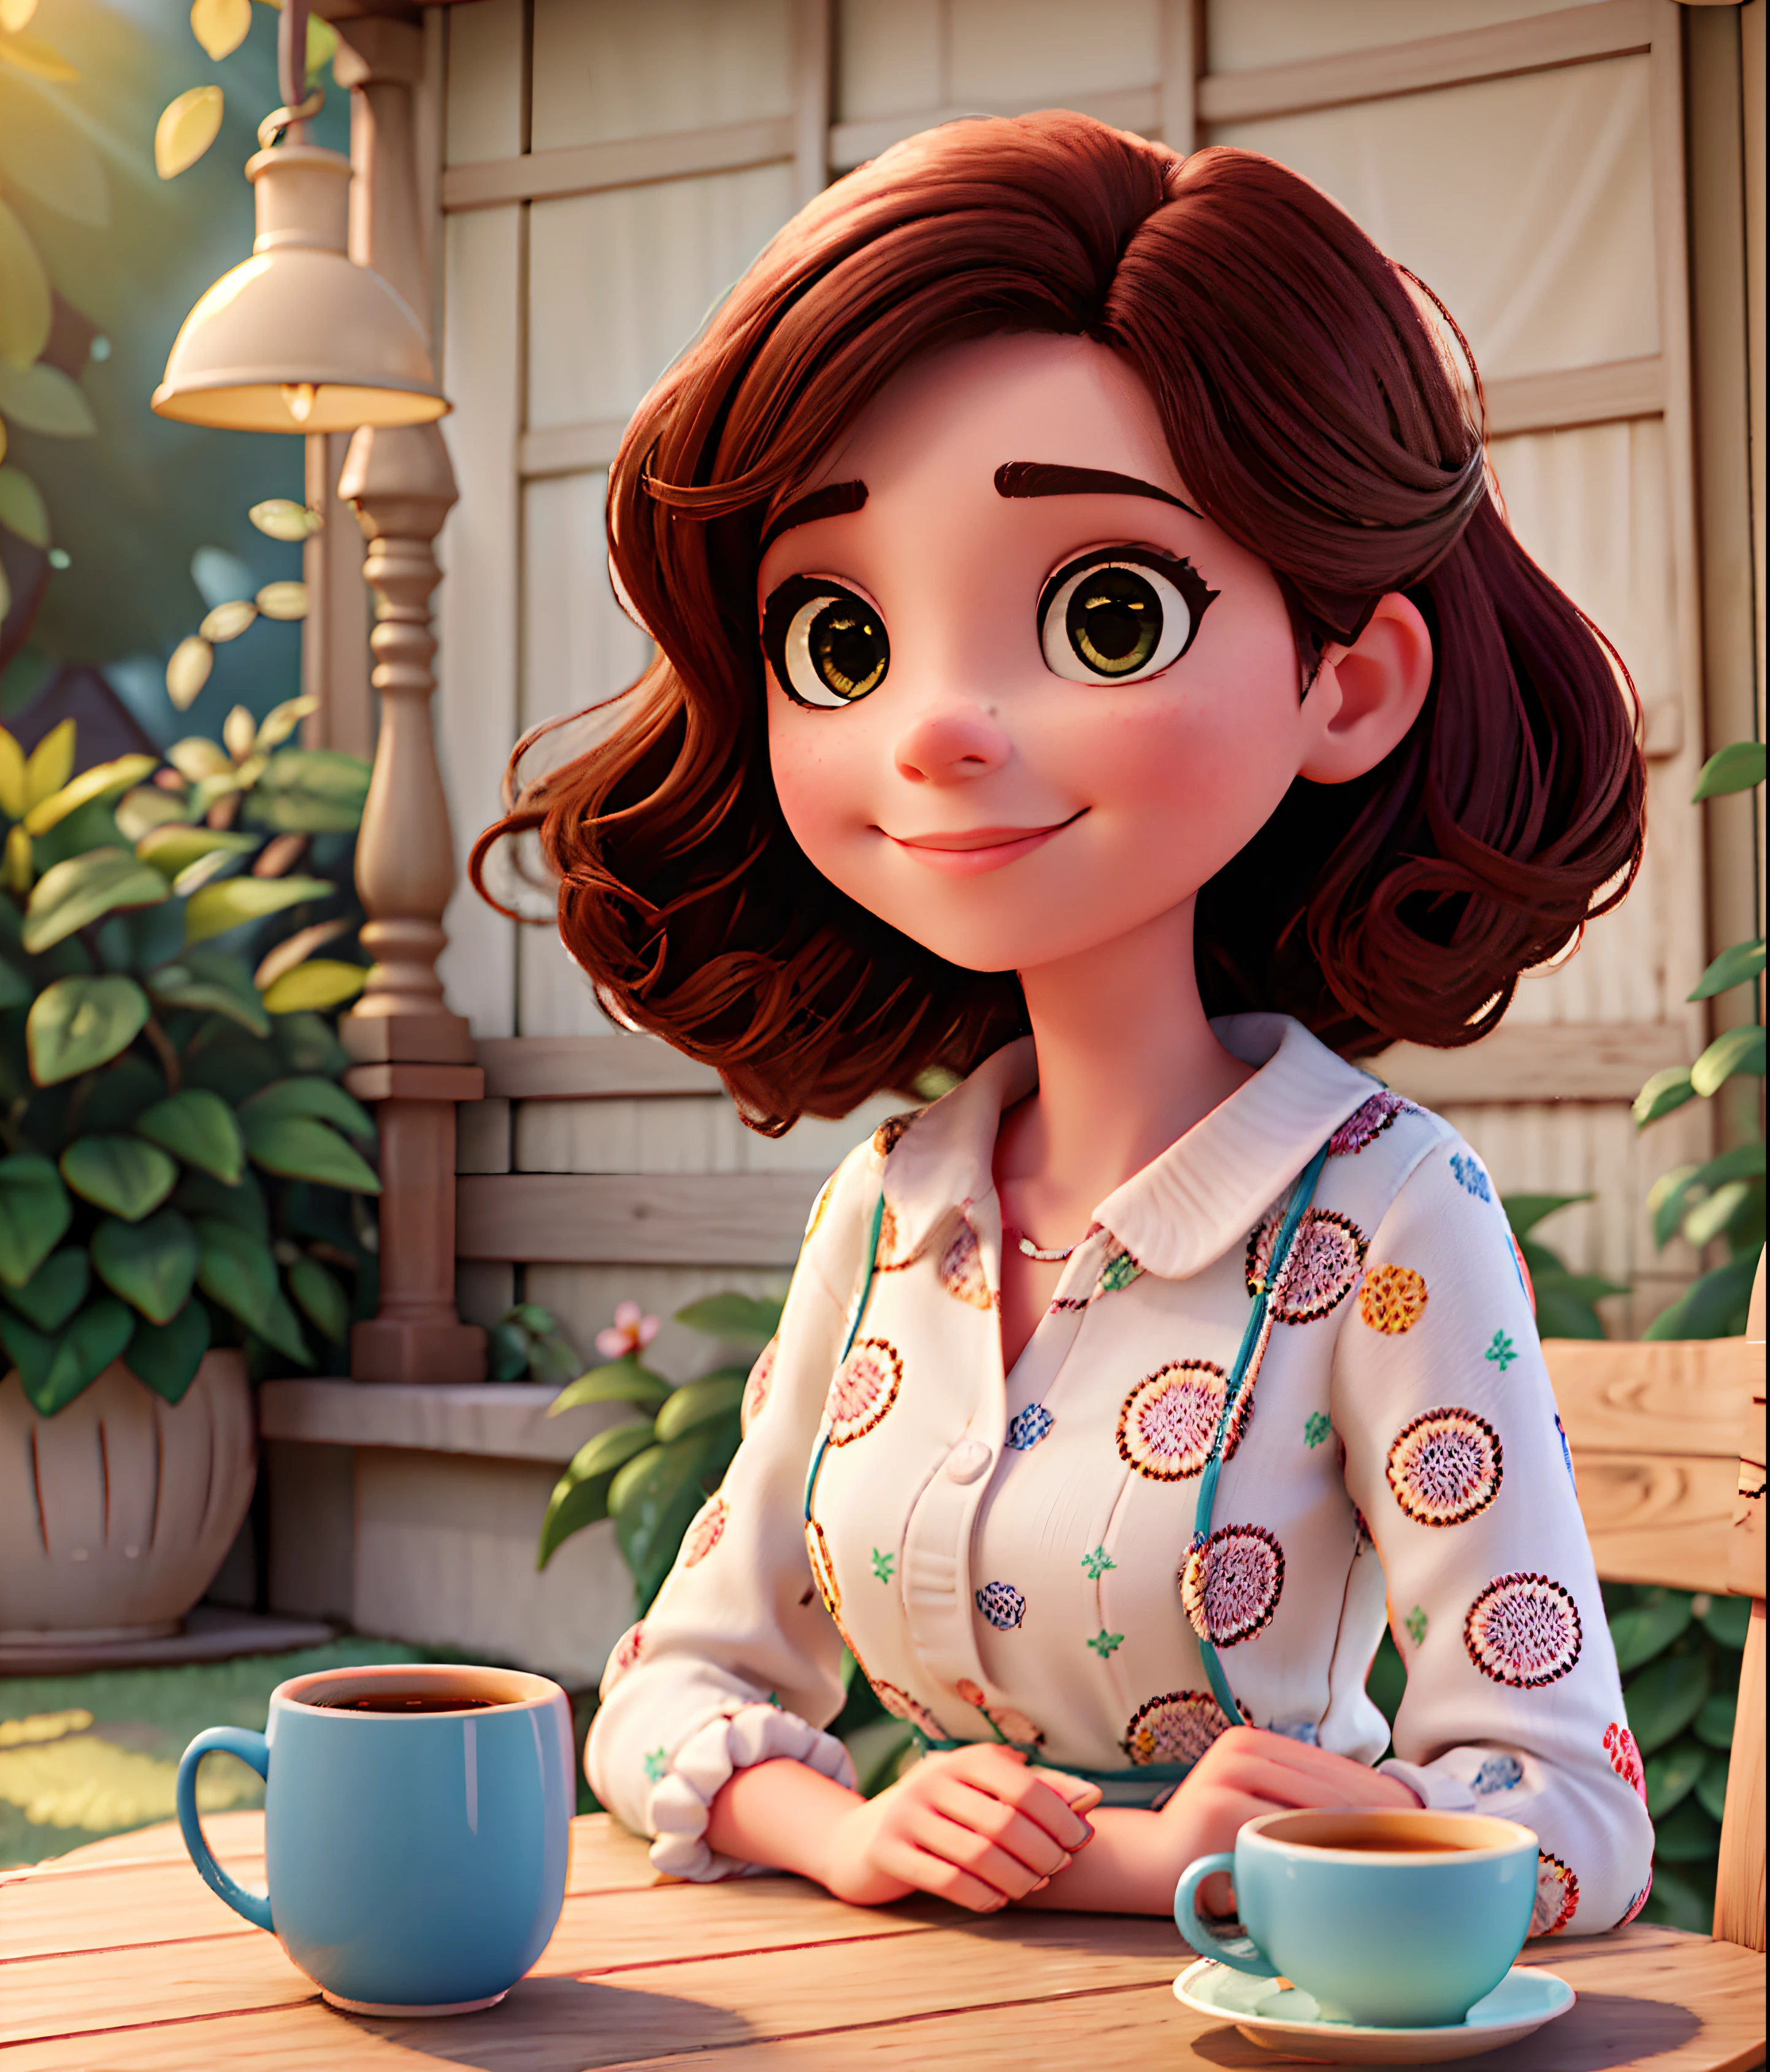 Pompt Disney pixar หญิงชาวบราซิลแสนสวยกำลังนั่งดื่มกาแฟที่โต๊ะในสวนของบ้านเธอ หน้าน่ารัก, ผมตรงสีดำมาก ตัดตรงถึงไหล่และมีฟรุ๊งฟริ๊ง. ผมสไตล์ญี่ปุ่นตาสีน้ำตาลและแก้มสีดอกกุหลาบมาก, สวมชุดลายจุดคลุมตักมองคุณด้วยสายตาเปี่ยมด้วยความรักและรอยยิ้มอันอ่อนโยน, ความชัดลึกที่ตื้น, แสงระดับโรงภาพยนตร์, แสงอ่อน, ย้อนแสง, รายละเอียดเล็กๆ น้อยๆ, การแสดงผล, เหมือนจริง, ภาพยนตร์, 85มม.1.4